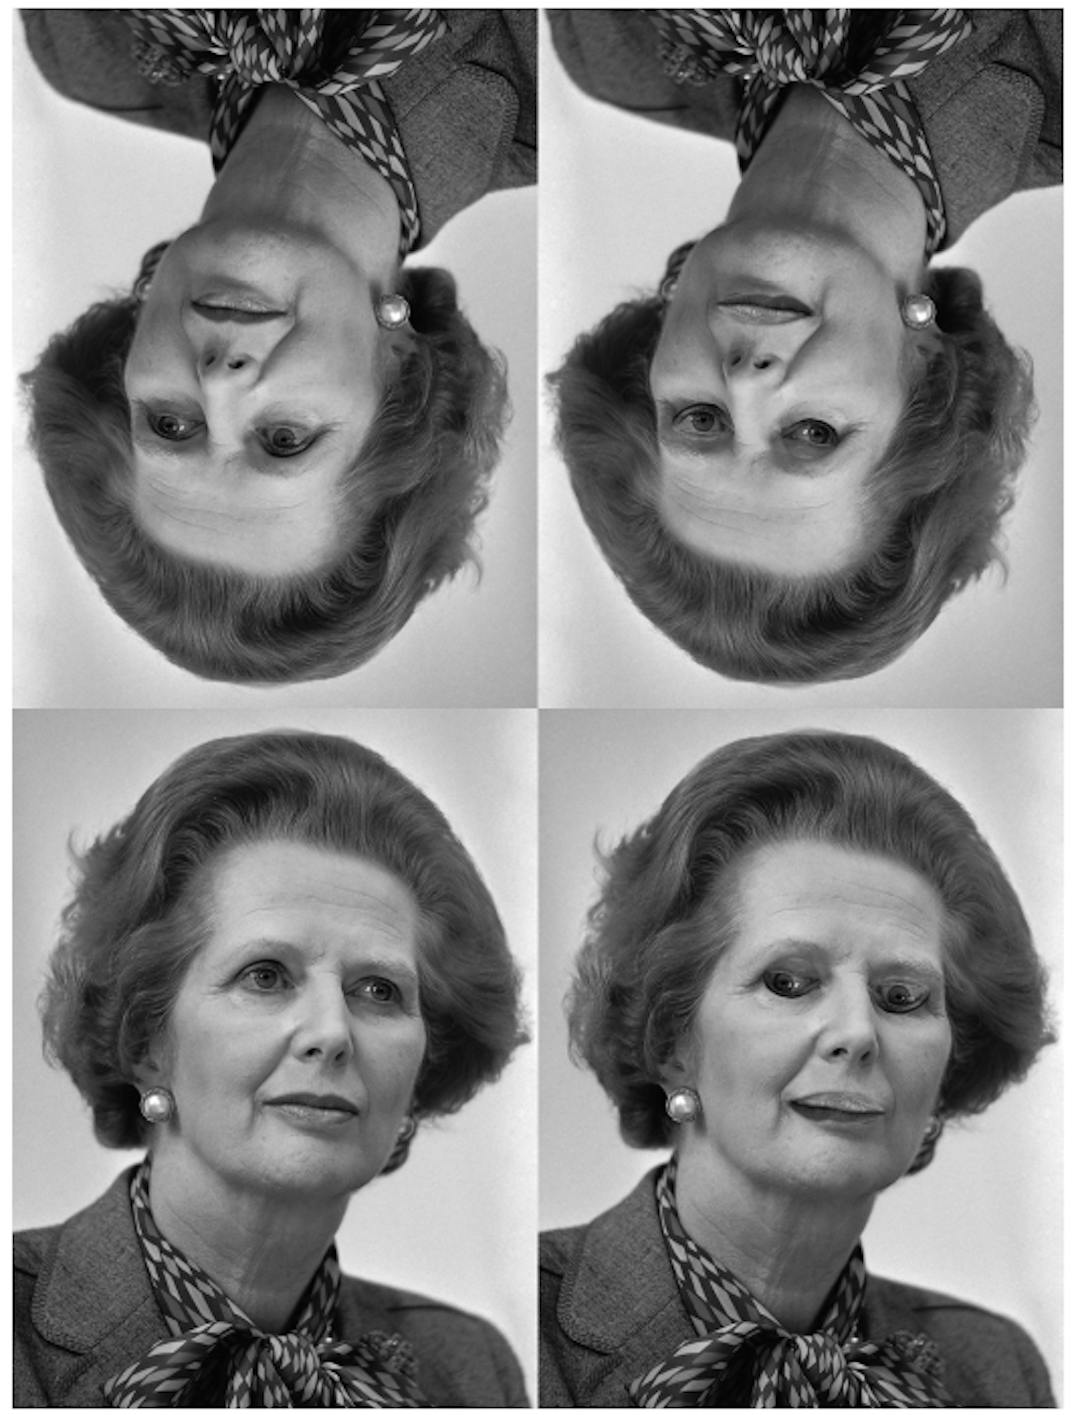 Hình 4. Ảo ảnh Margaret Thatcher [31]: các khuôn mặt ở hàng trên cùng là phiên bản đảo ngược của những khuôn mặt ở hàng dưới cùng. Mắt và miệng đảo ngược ở phía dưới bên phải được thể hiện rõ khi khuôn mặt thẳng, nhưng không thể hiện rõ khi nó đảo ngược. (Nhà cung cấp hình ảnh: Rob Bogaerts/Anefo https://commons.wikimedia.org/w/index.php?curid=79649613))